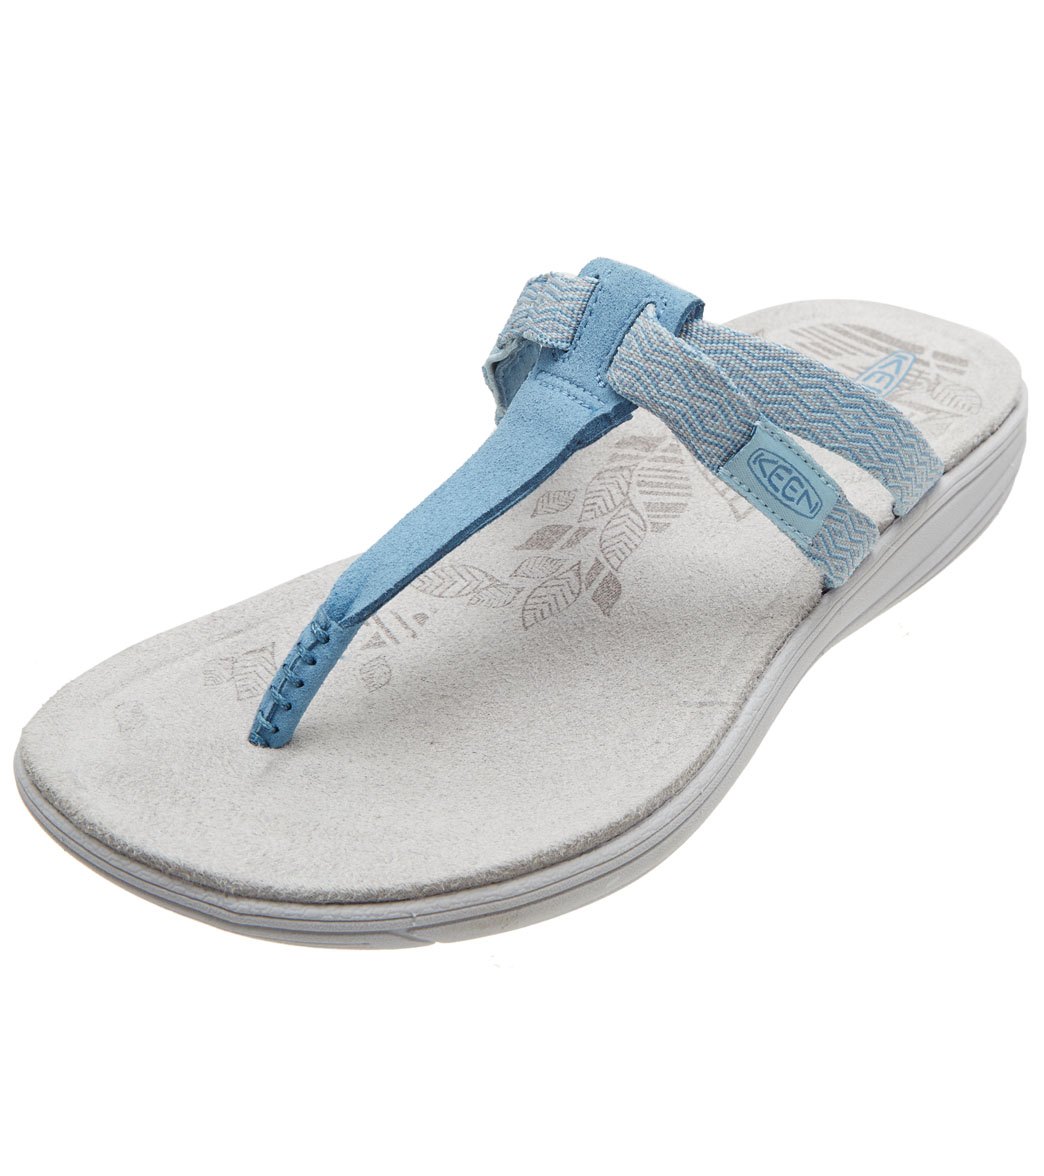 Keen Women's Damaya Flip Flop Sandals - Sterling Blue/Dress Blue 9.5 - Swimoutlet.com